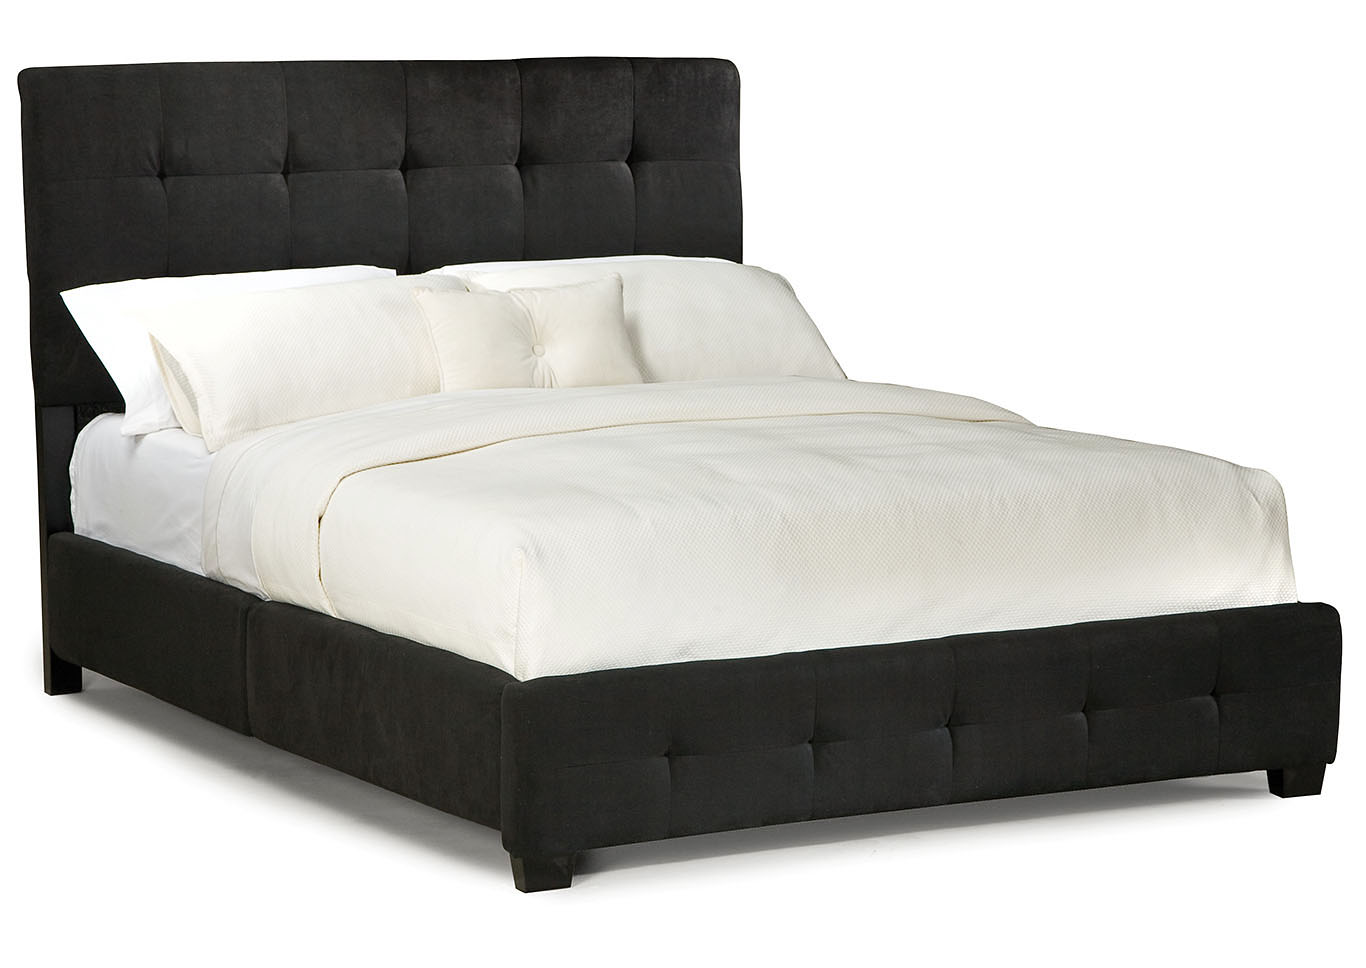 Madison Square Black Queen Upholstered Platform Bed,Standard